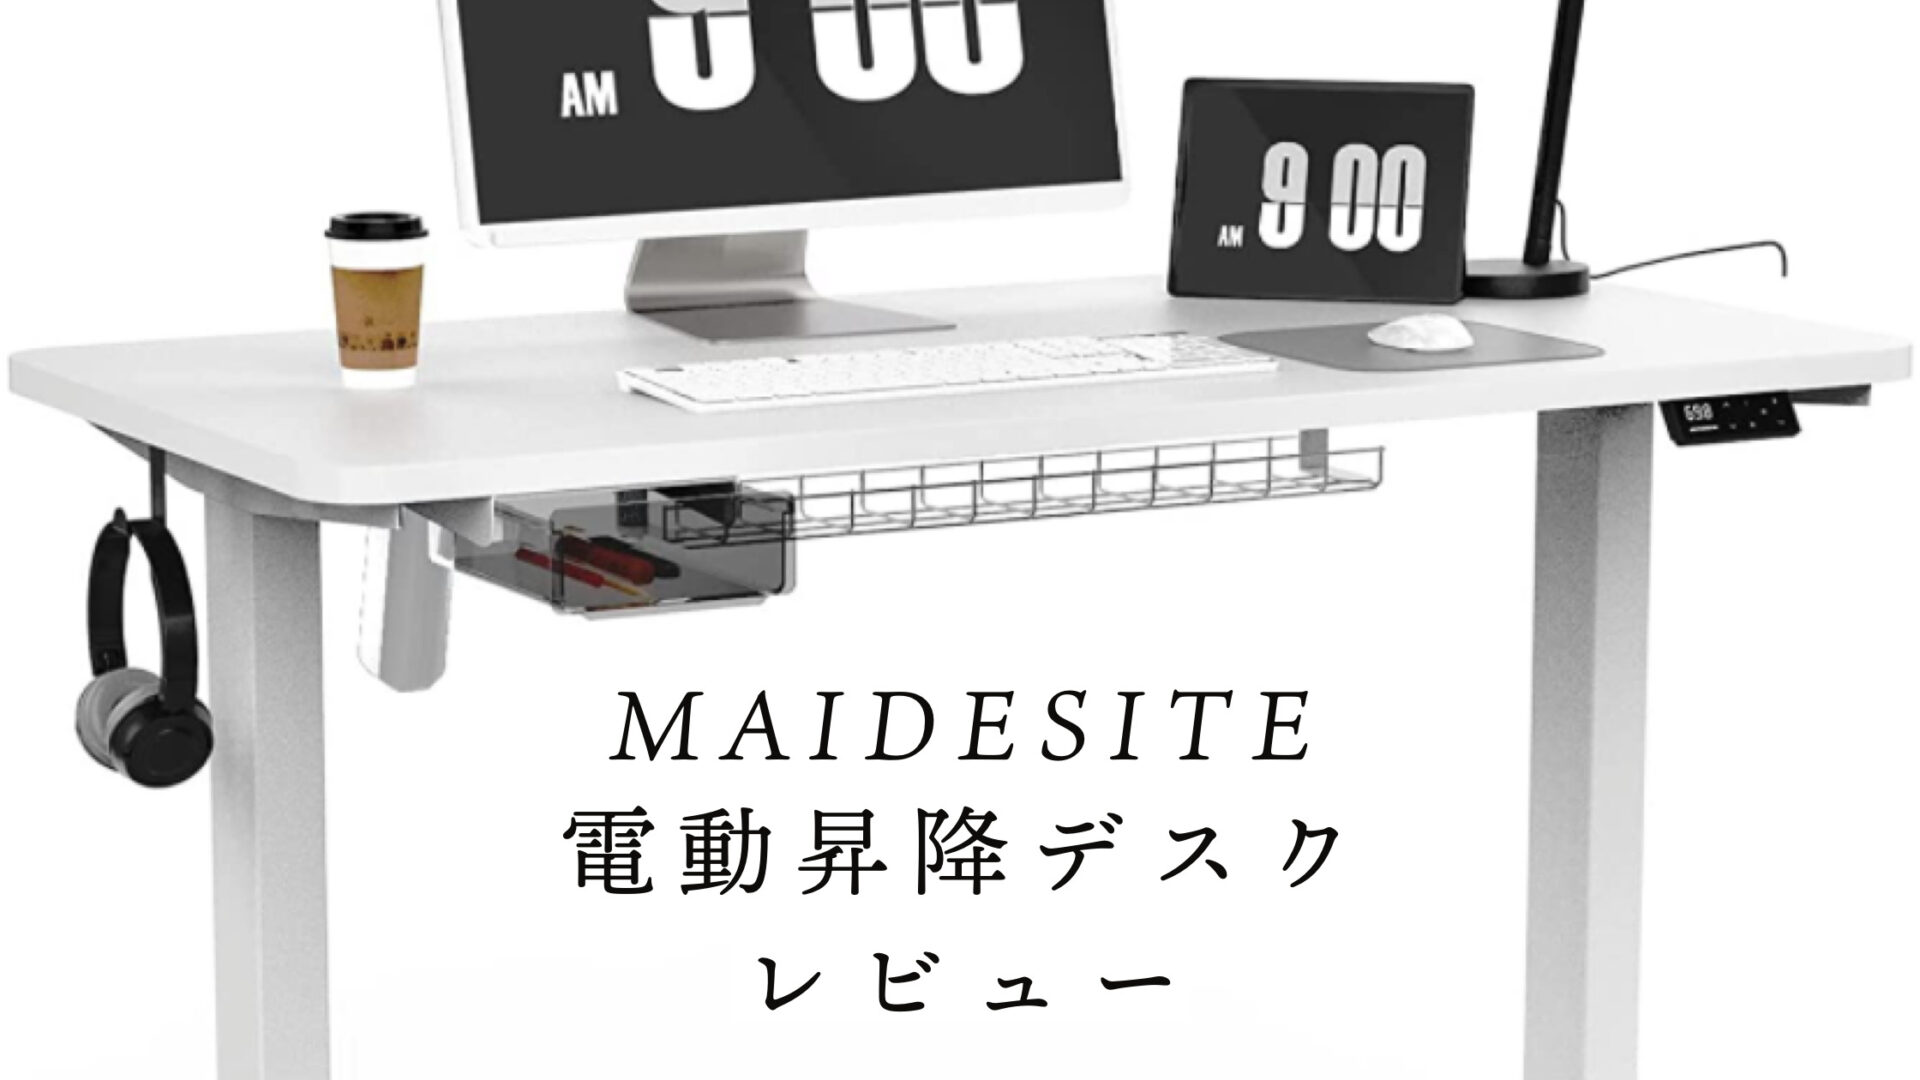 数量は多】 MAIDESITE 電動昇降デスク スタンディングデスク 110*60 事務机/学習机